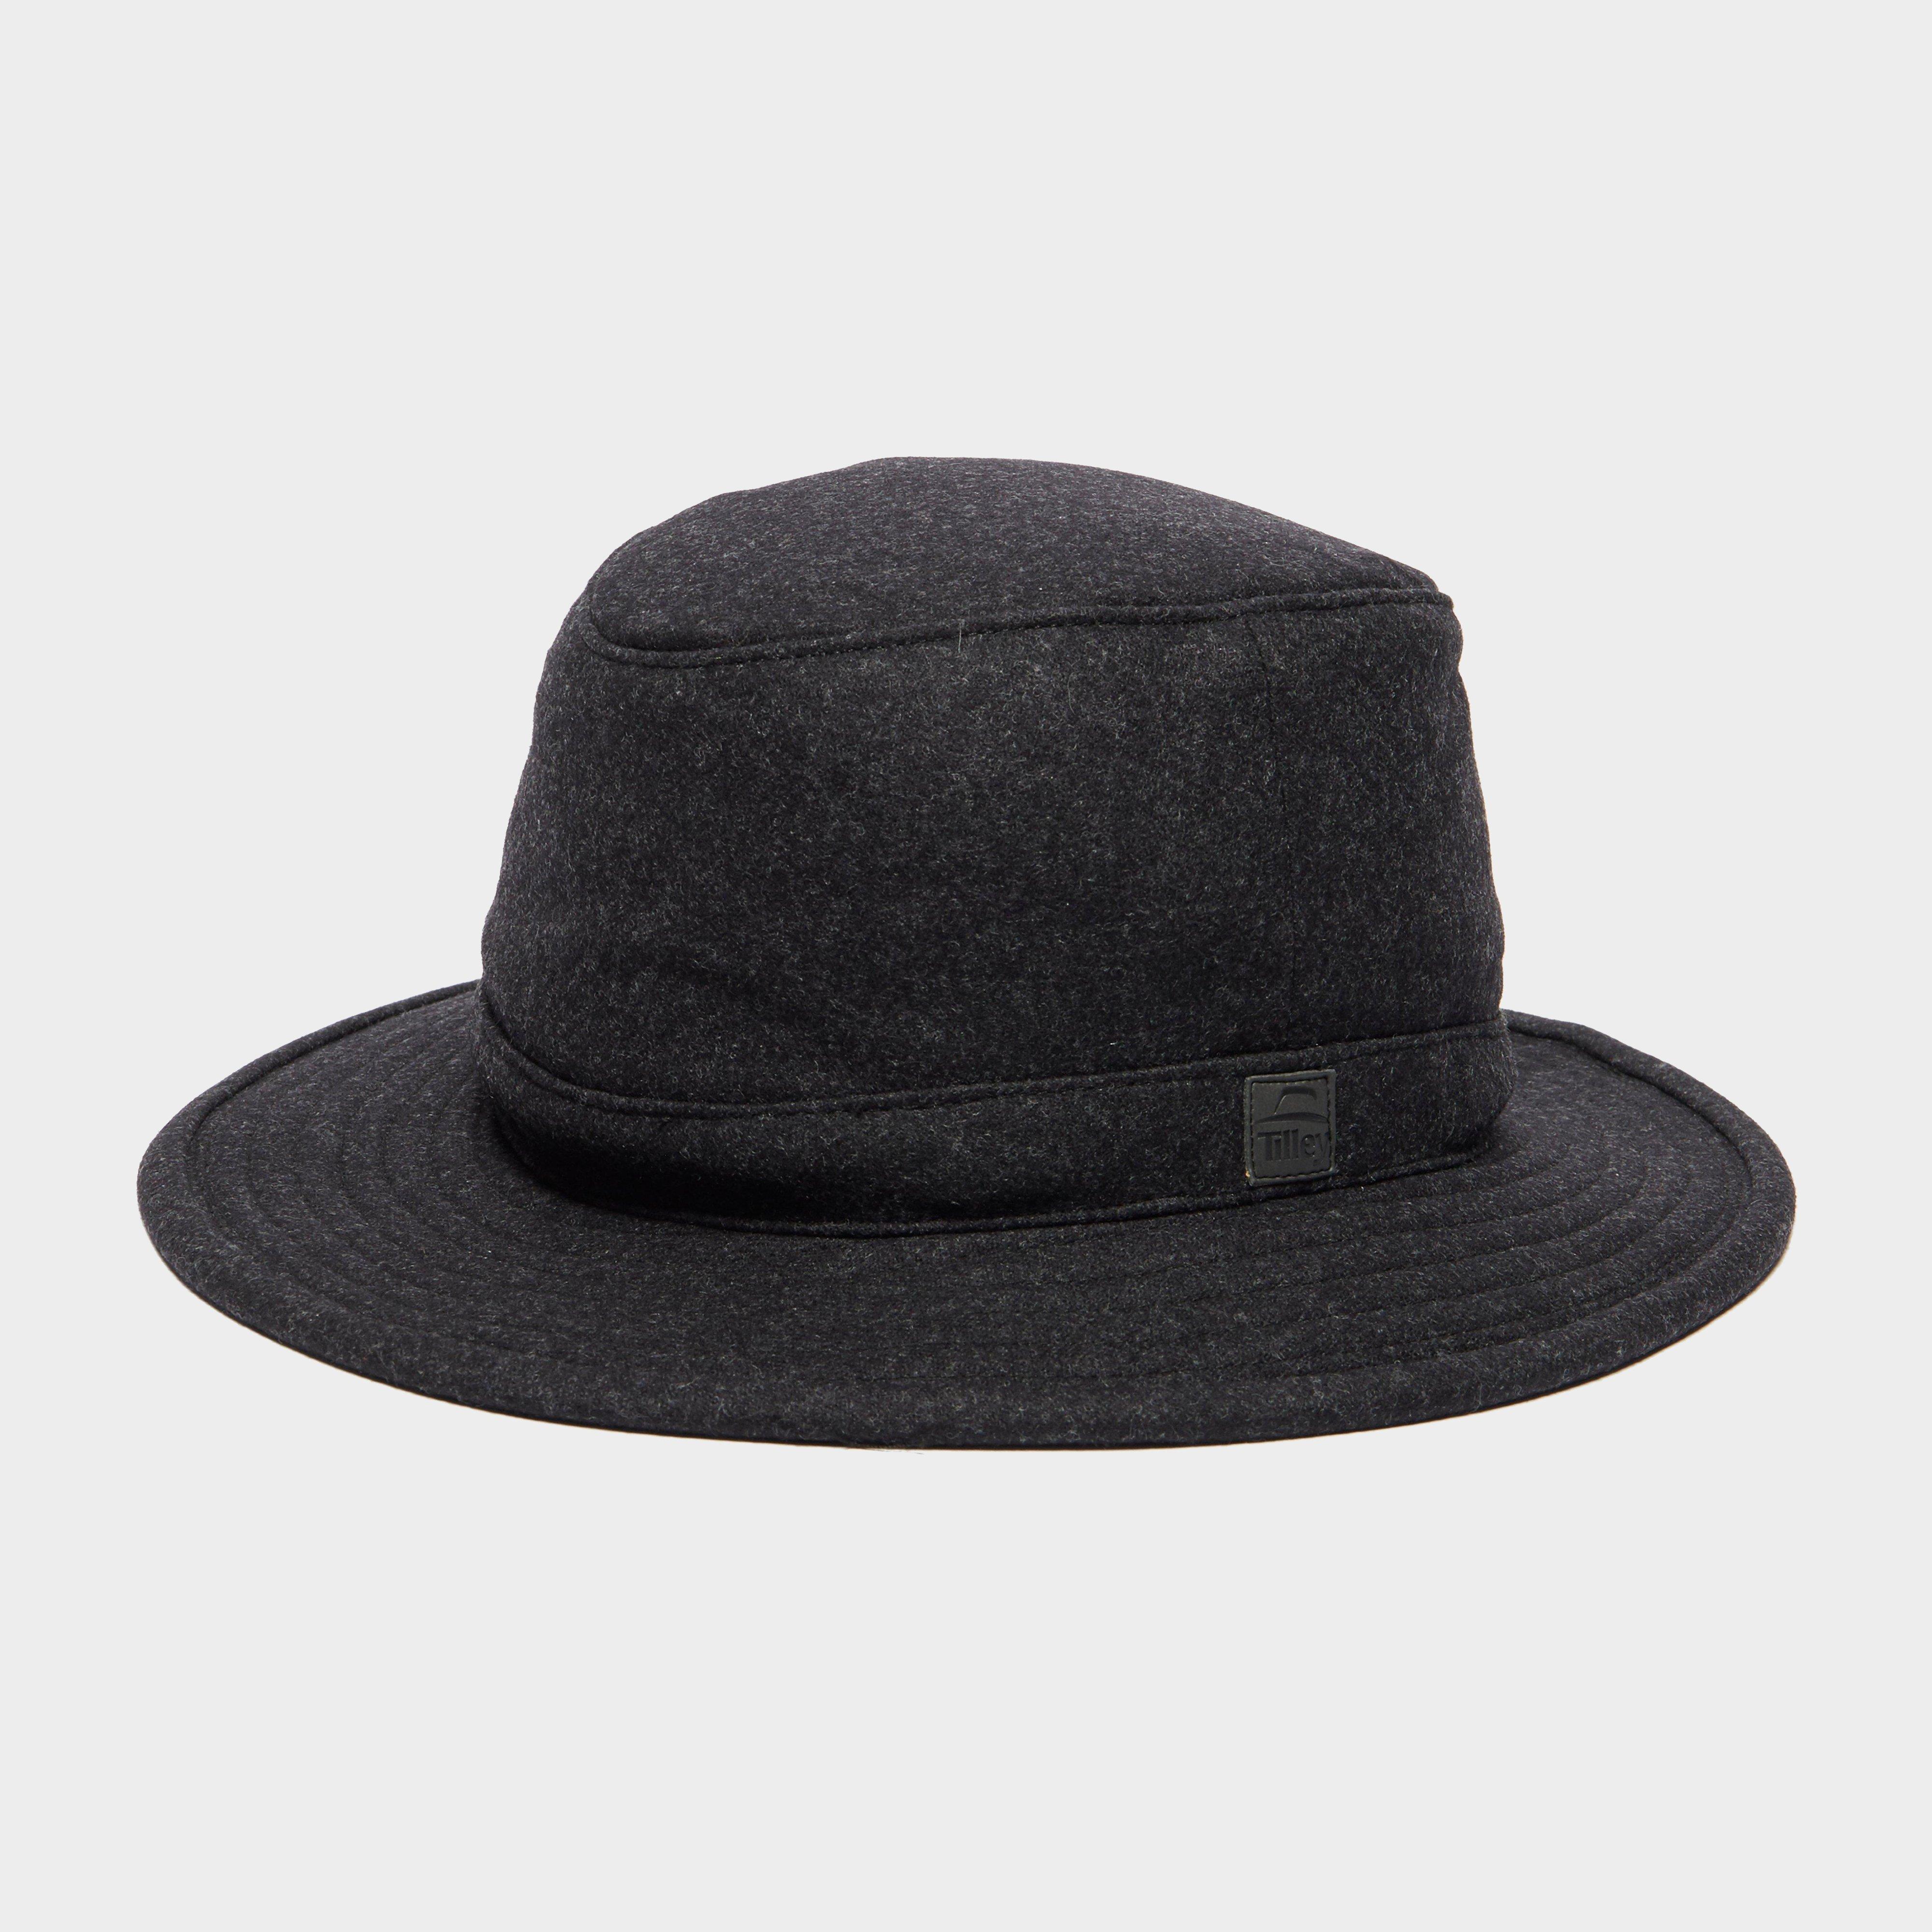 Tilley Mens Ttw2 Tec Wool Hat - Black/blk  Black/blk